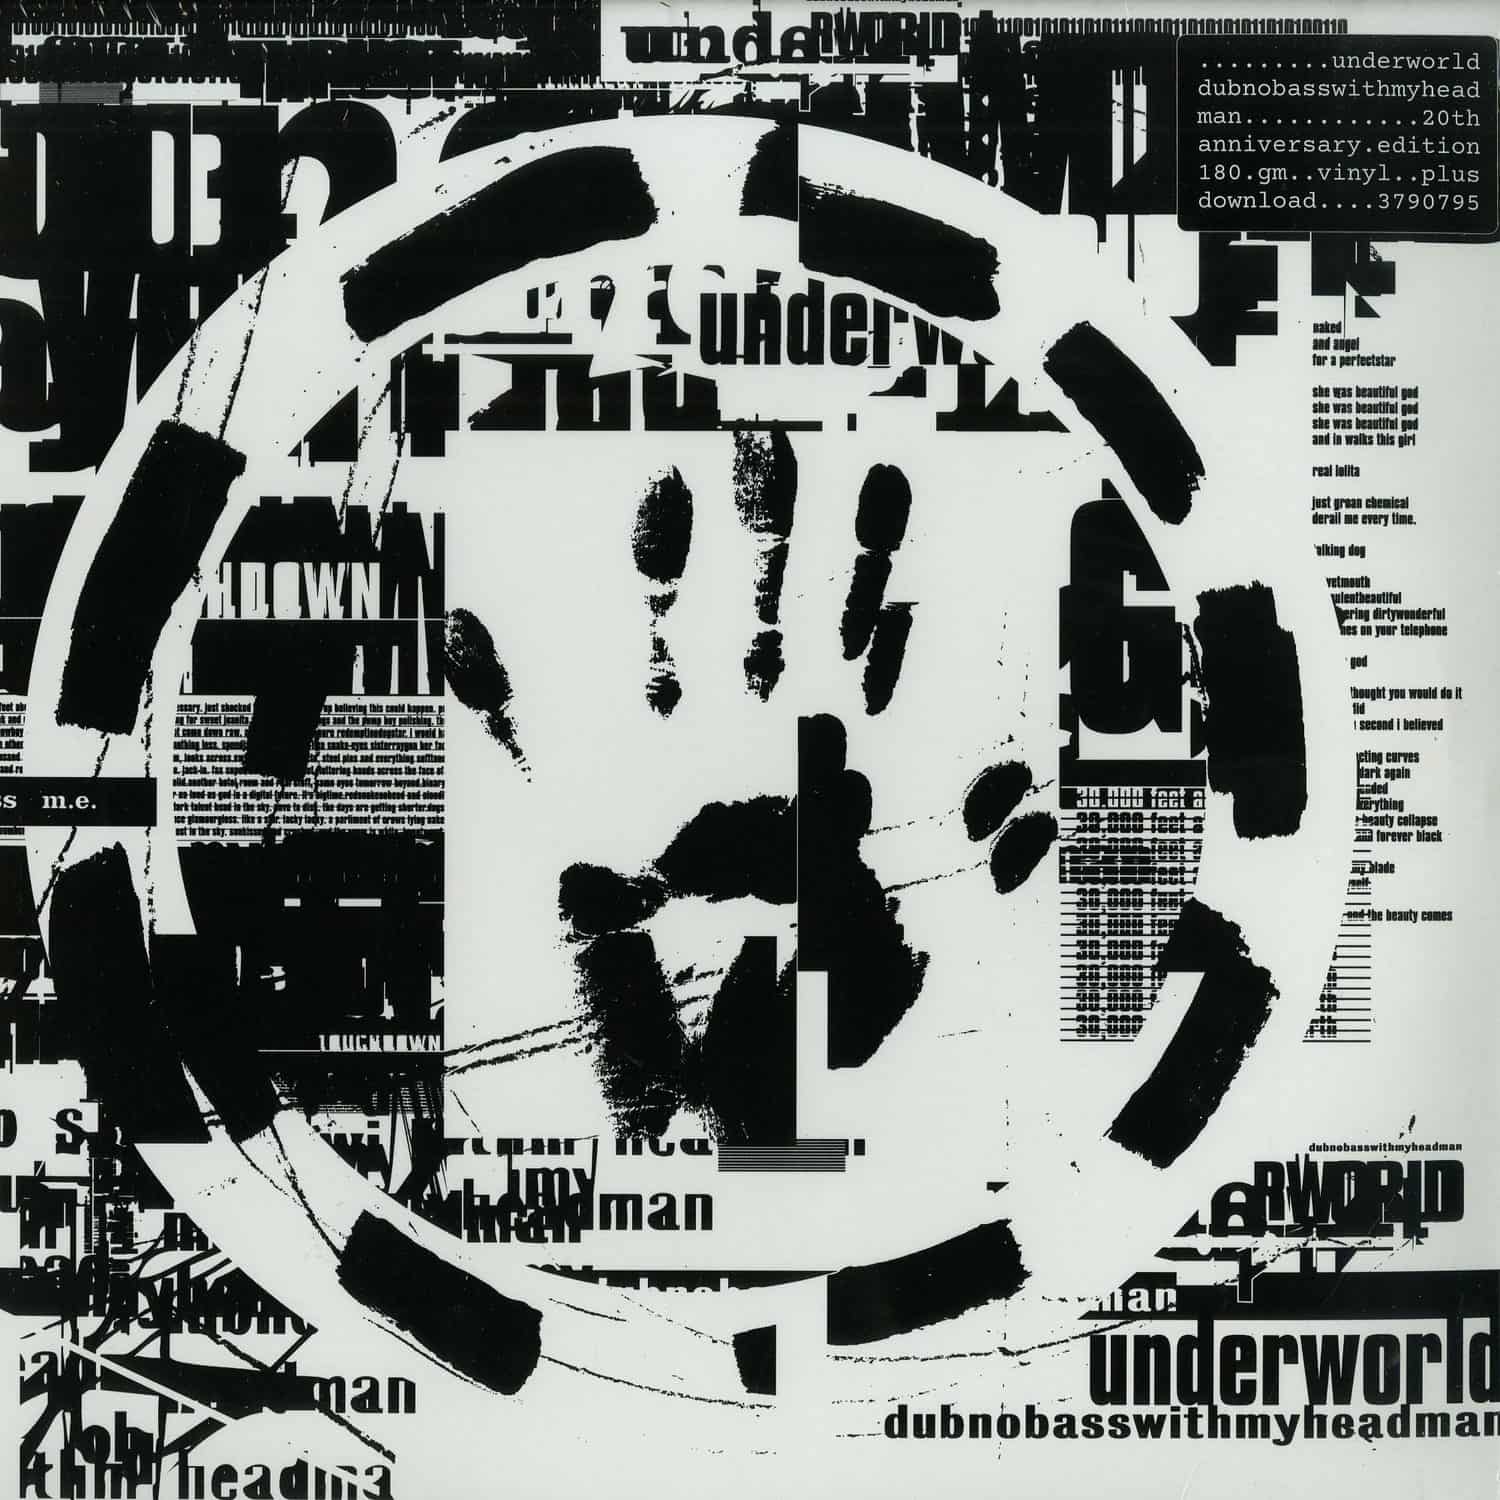 Underworld - DUBNOBASSWITHMYHEADMAN 